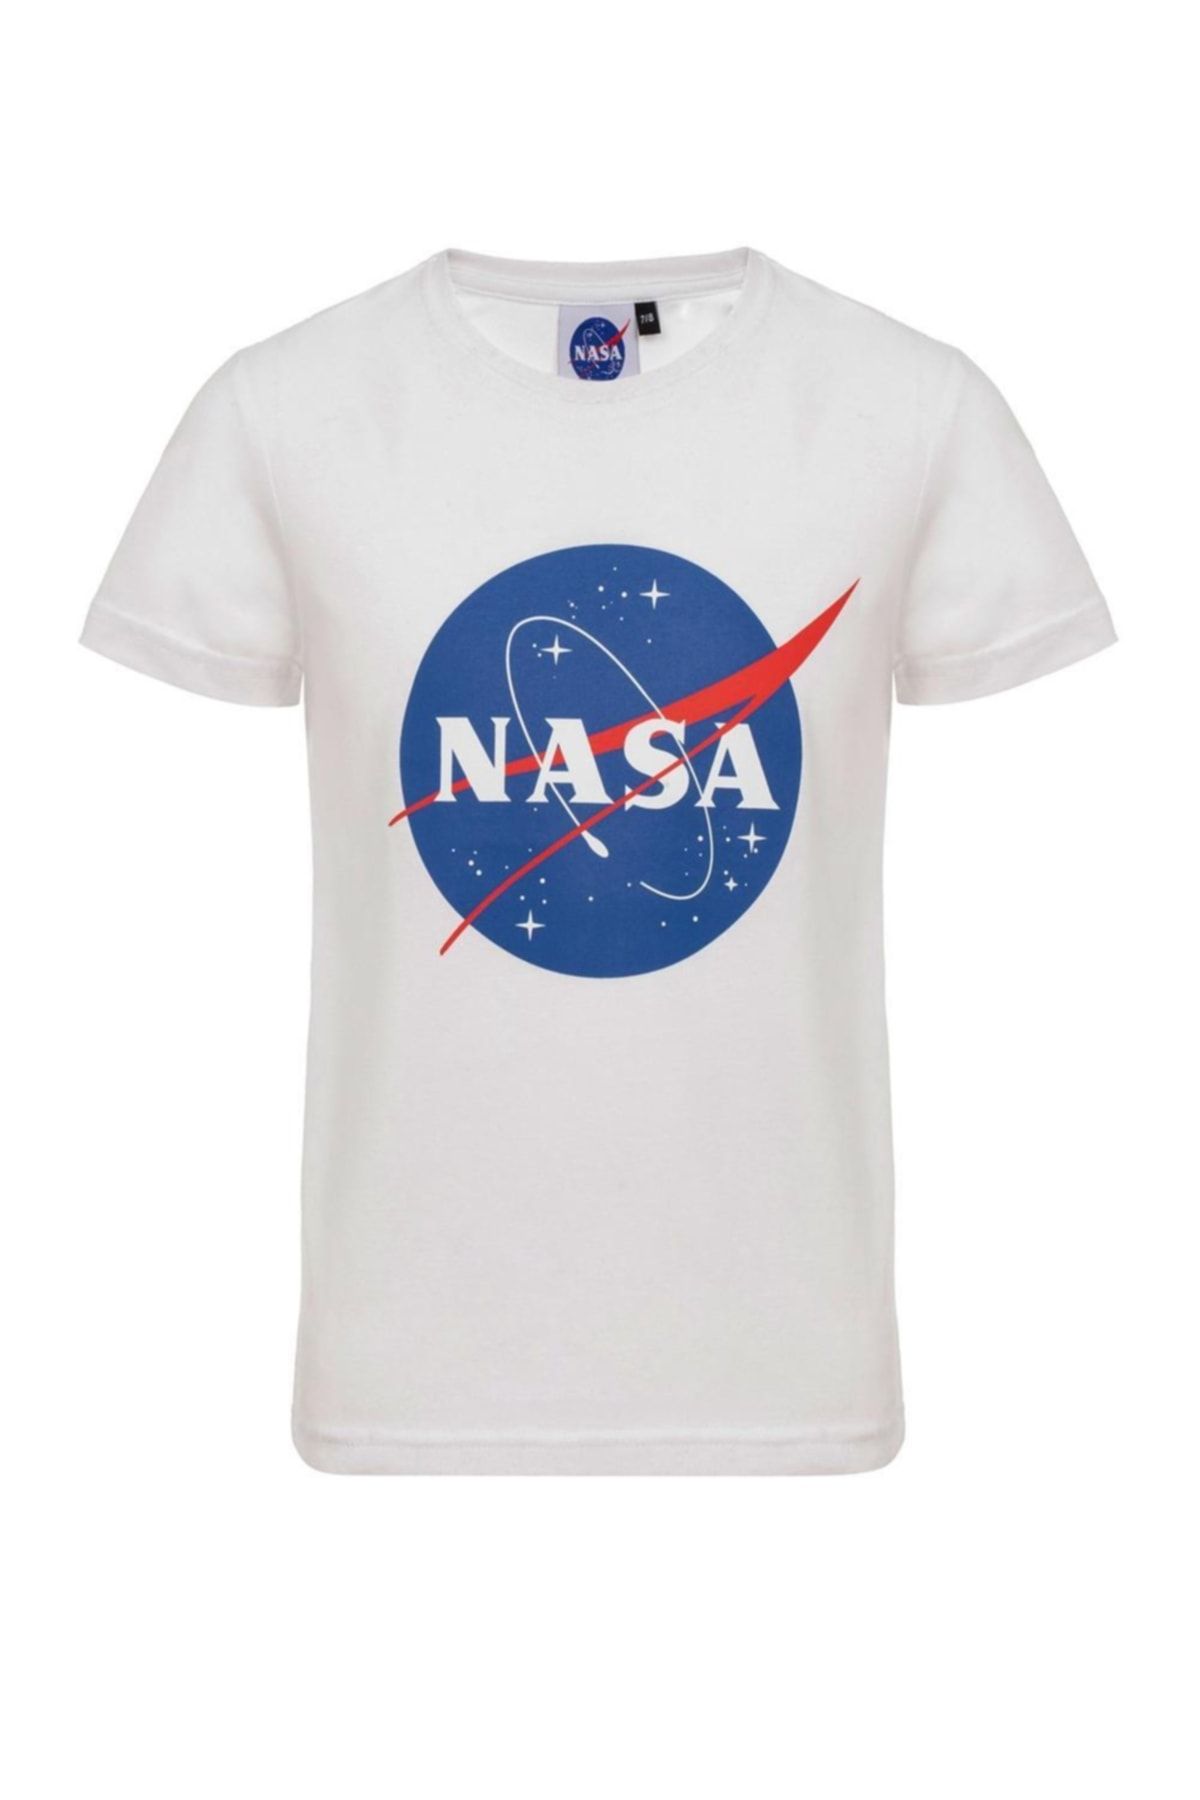 Printed T-shirt, Nasa H&m Shirt